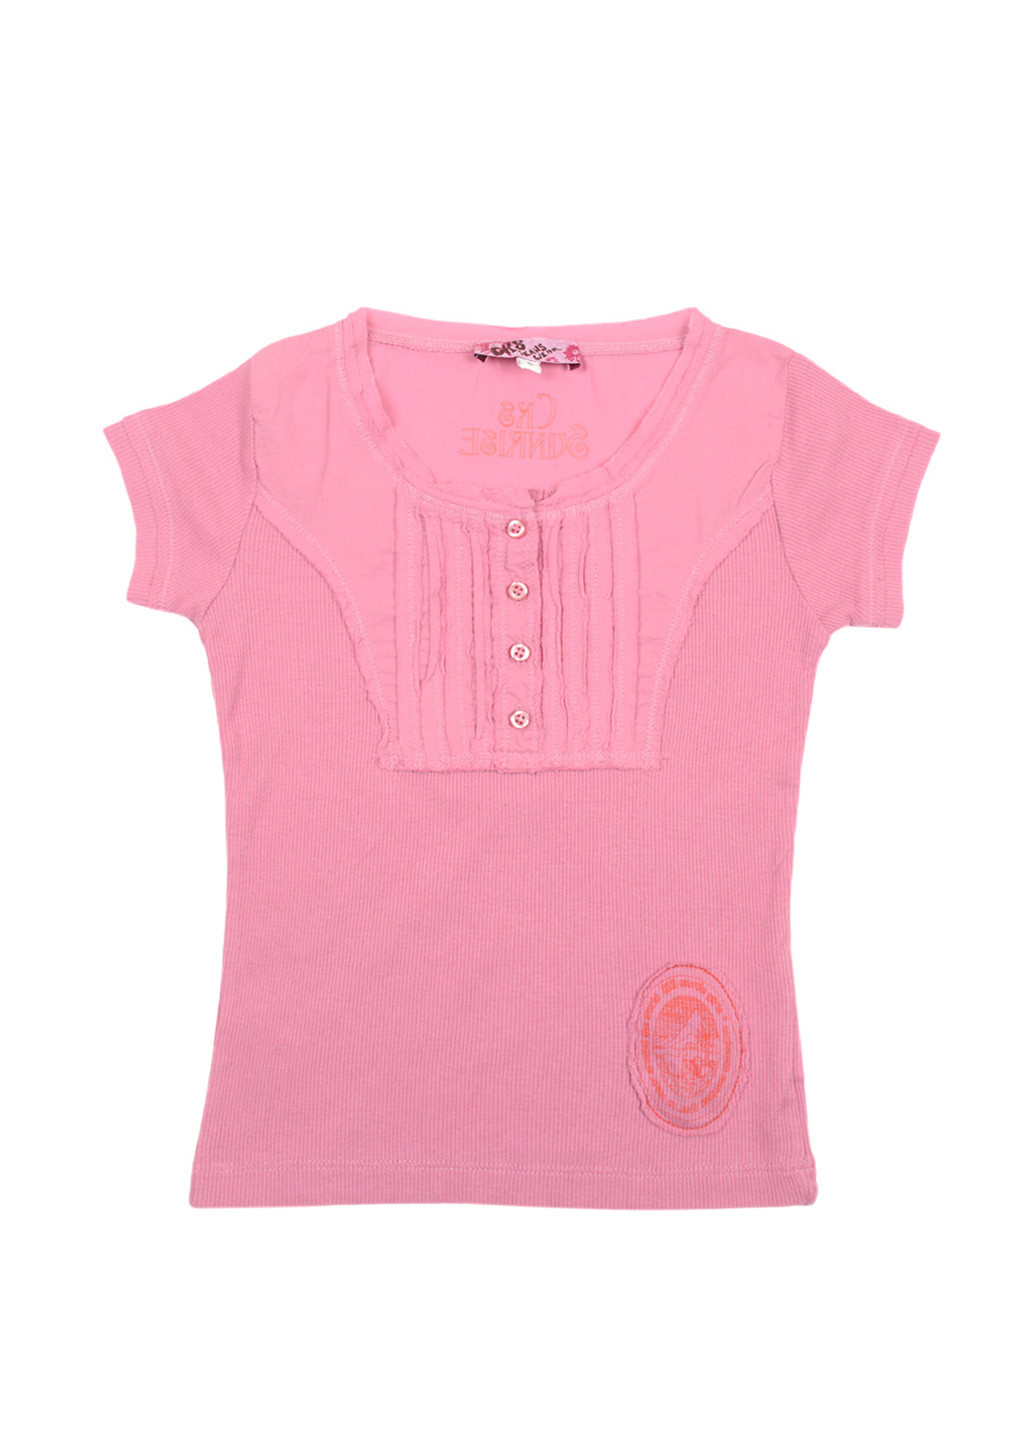 Розовая летняя футболка с коротким рукавом CKS